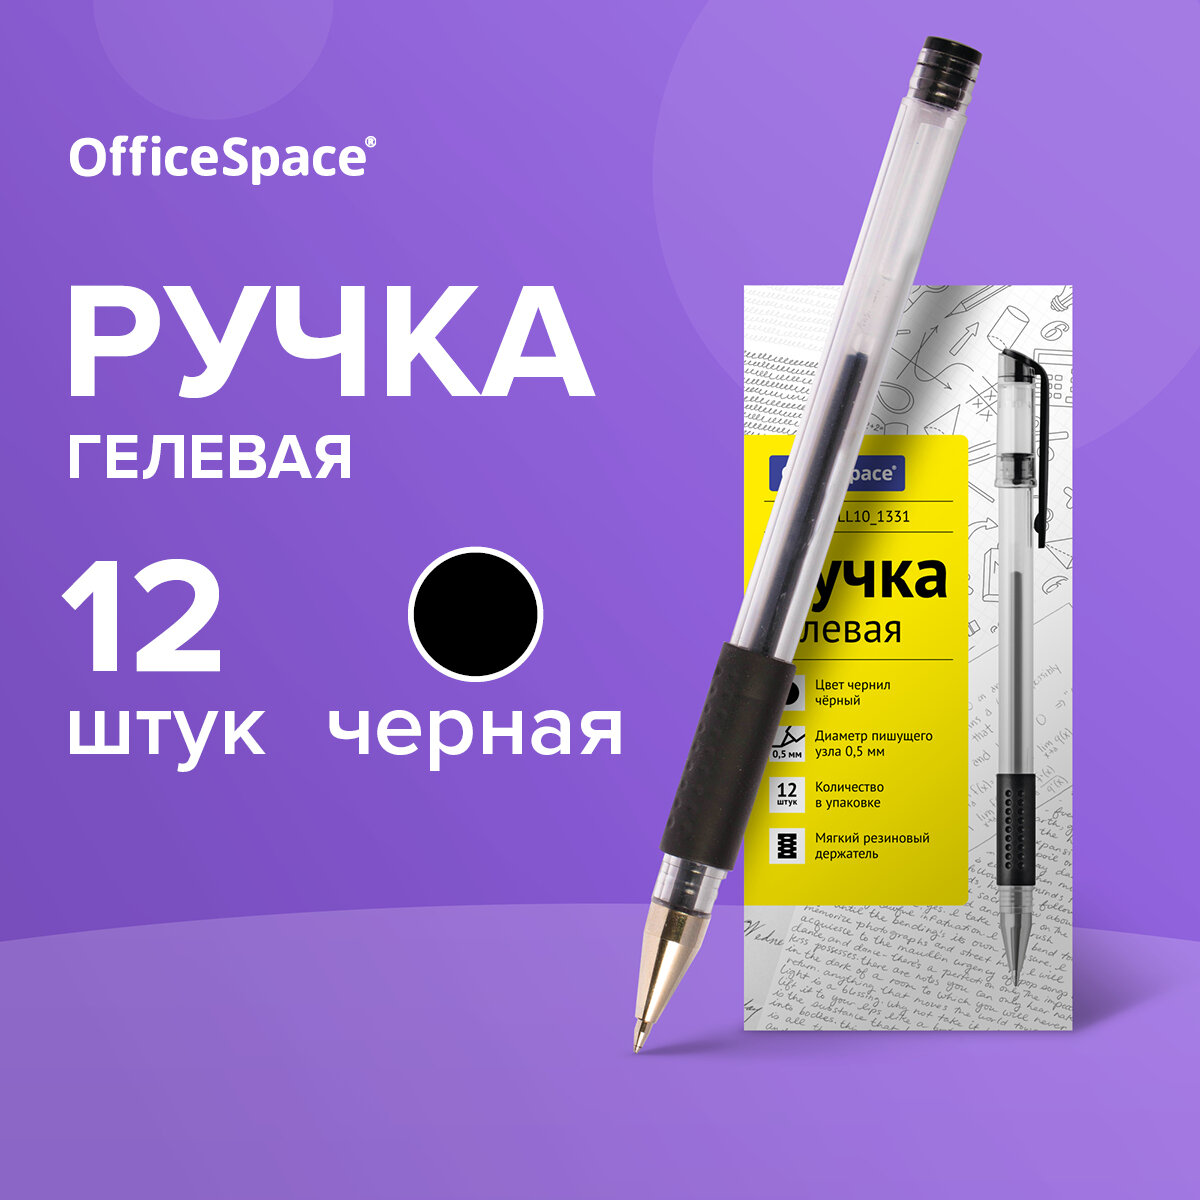 OfficeSpace Набор гелевых ручек, 0.4 мм (GLL10_1331), черный цвет чернил, 12 шт.